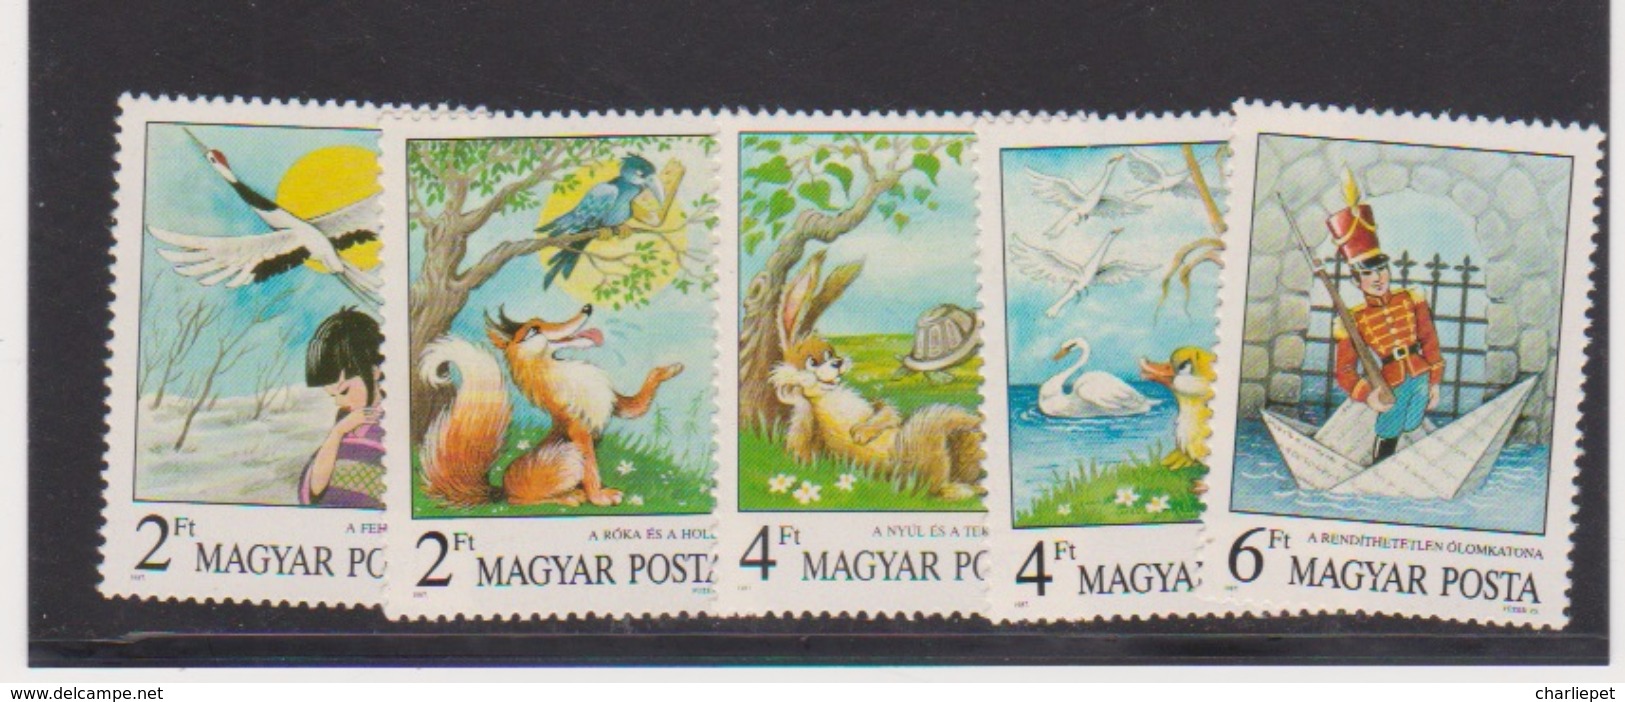 HUNGARY 1987 Scott # 3102-06 FAIRY TALES Set MNH - Unused Stamps